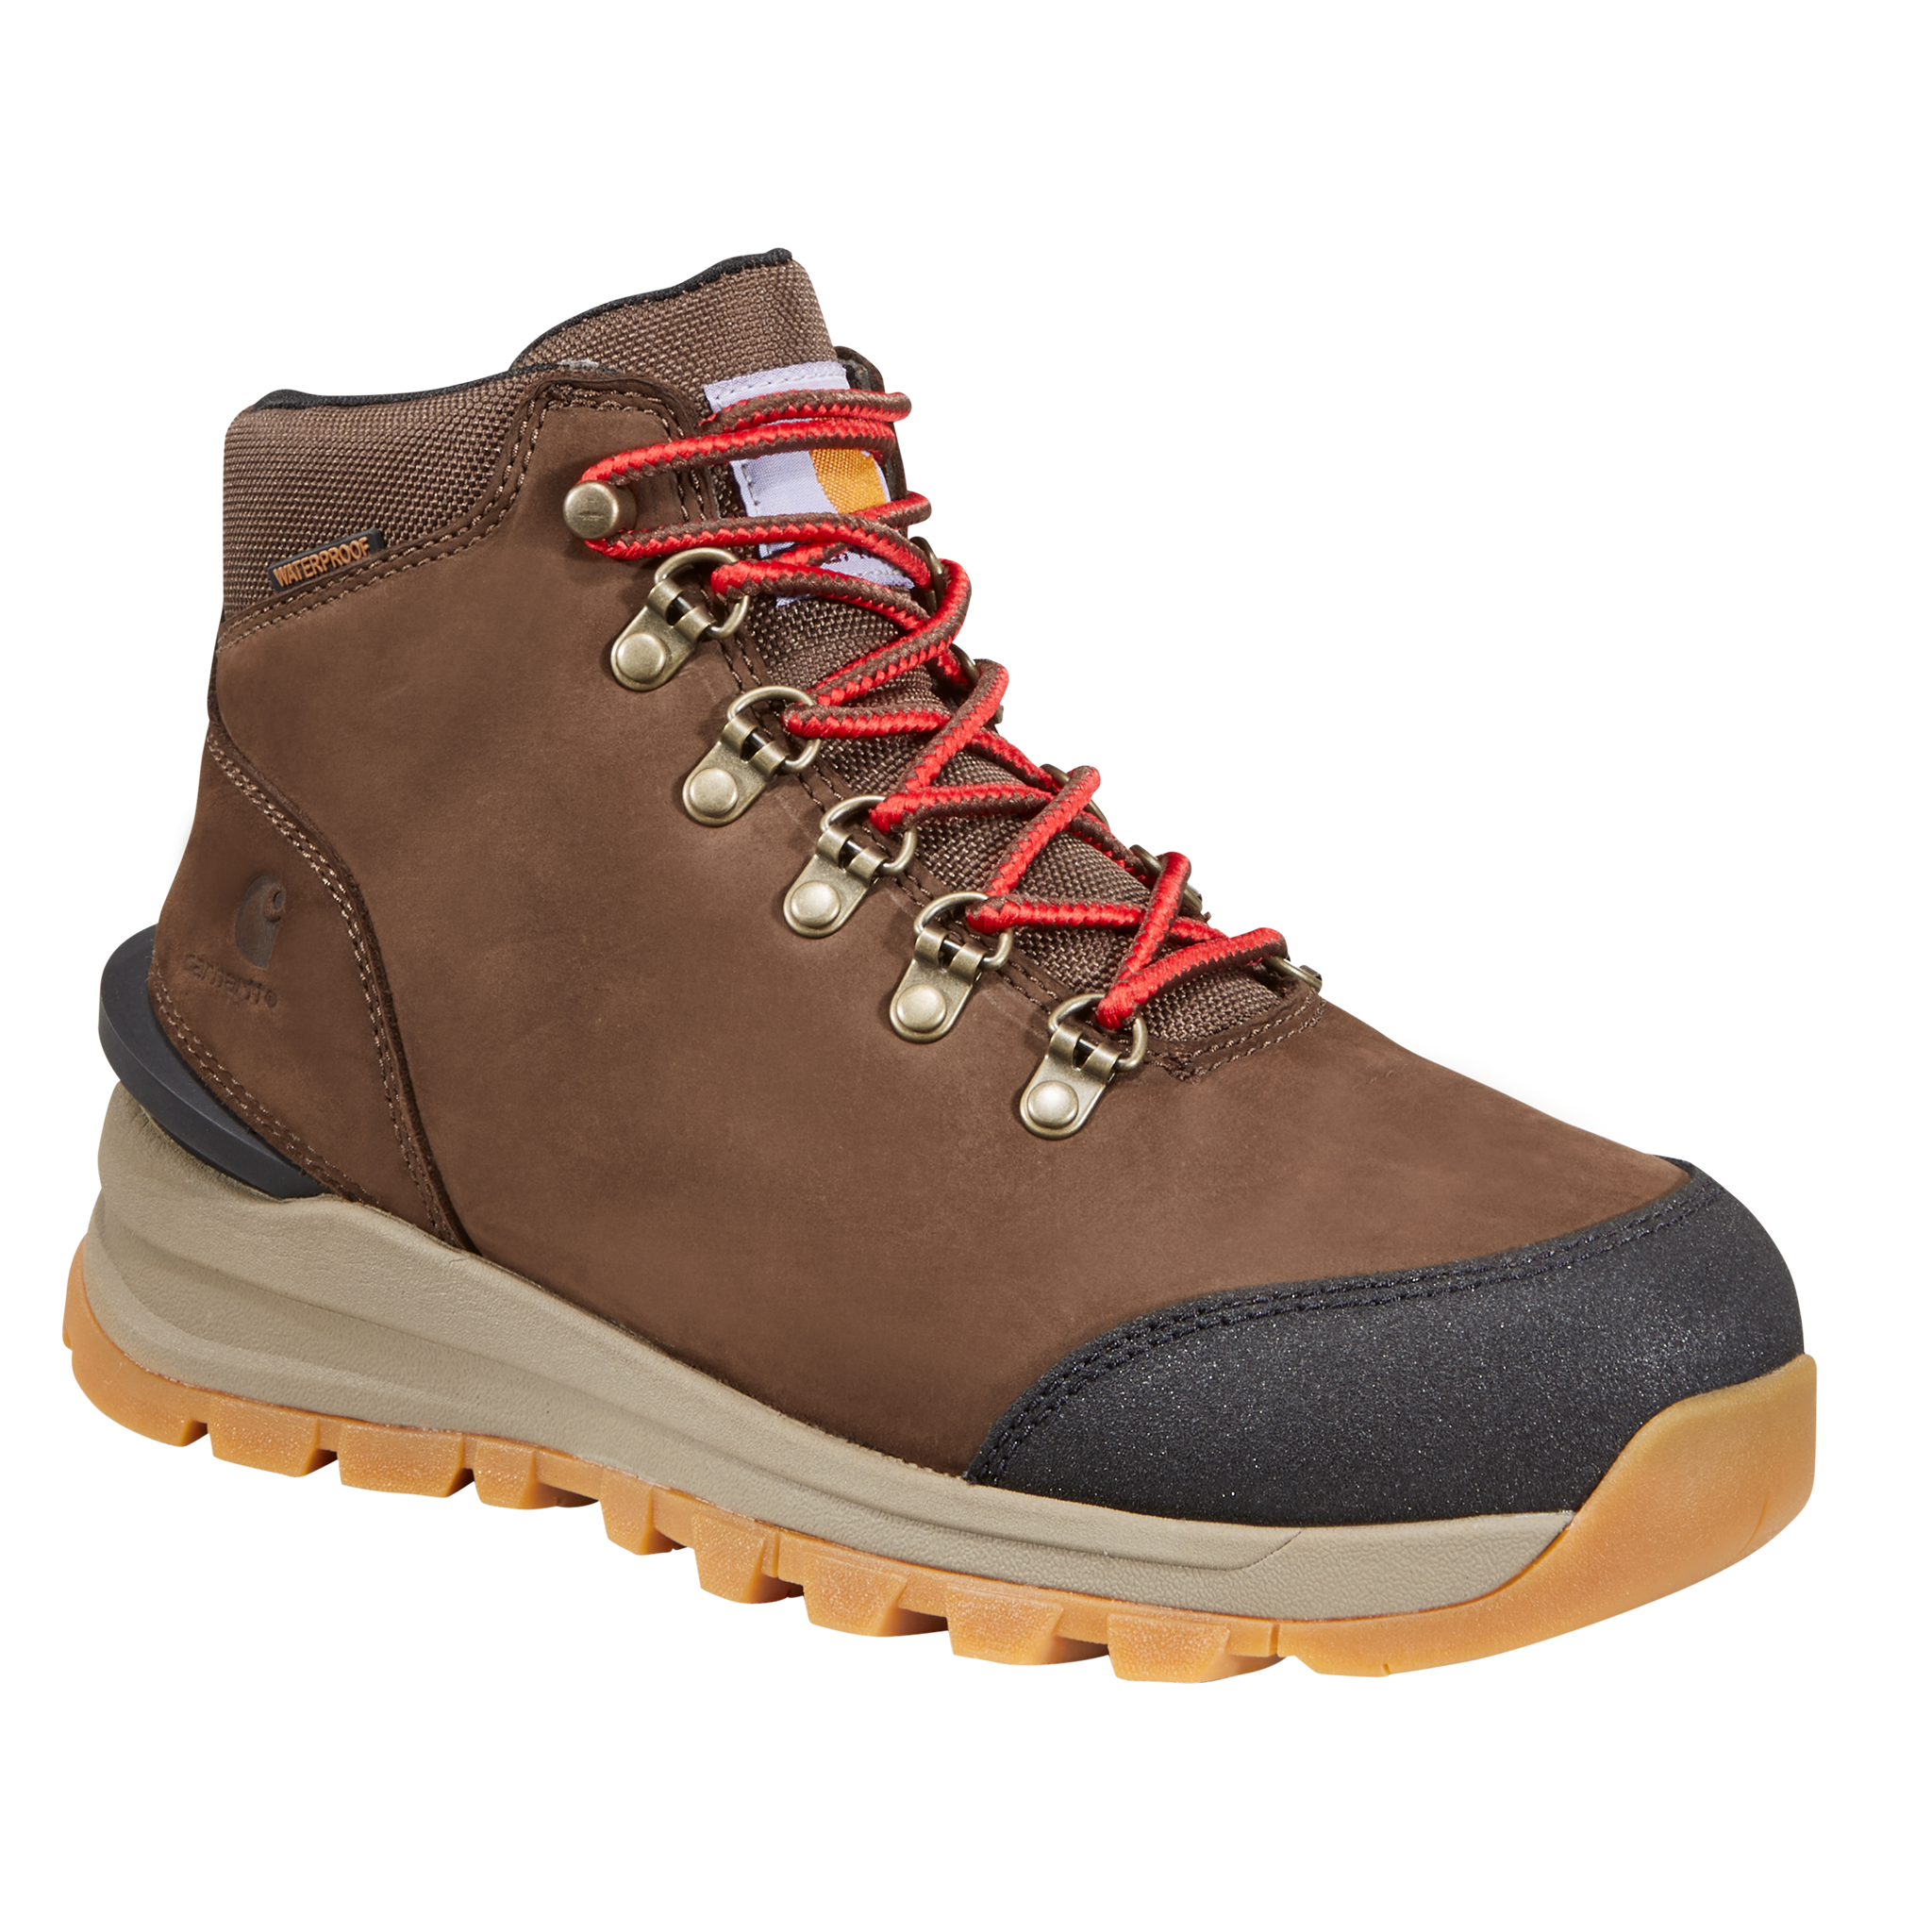 Carhartt Gilmore Waterproof Hiking Boots for Ladies - Dark Brown Nubuck - 7.5M